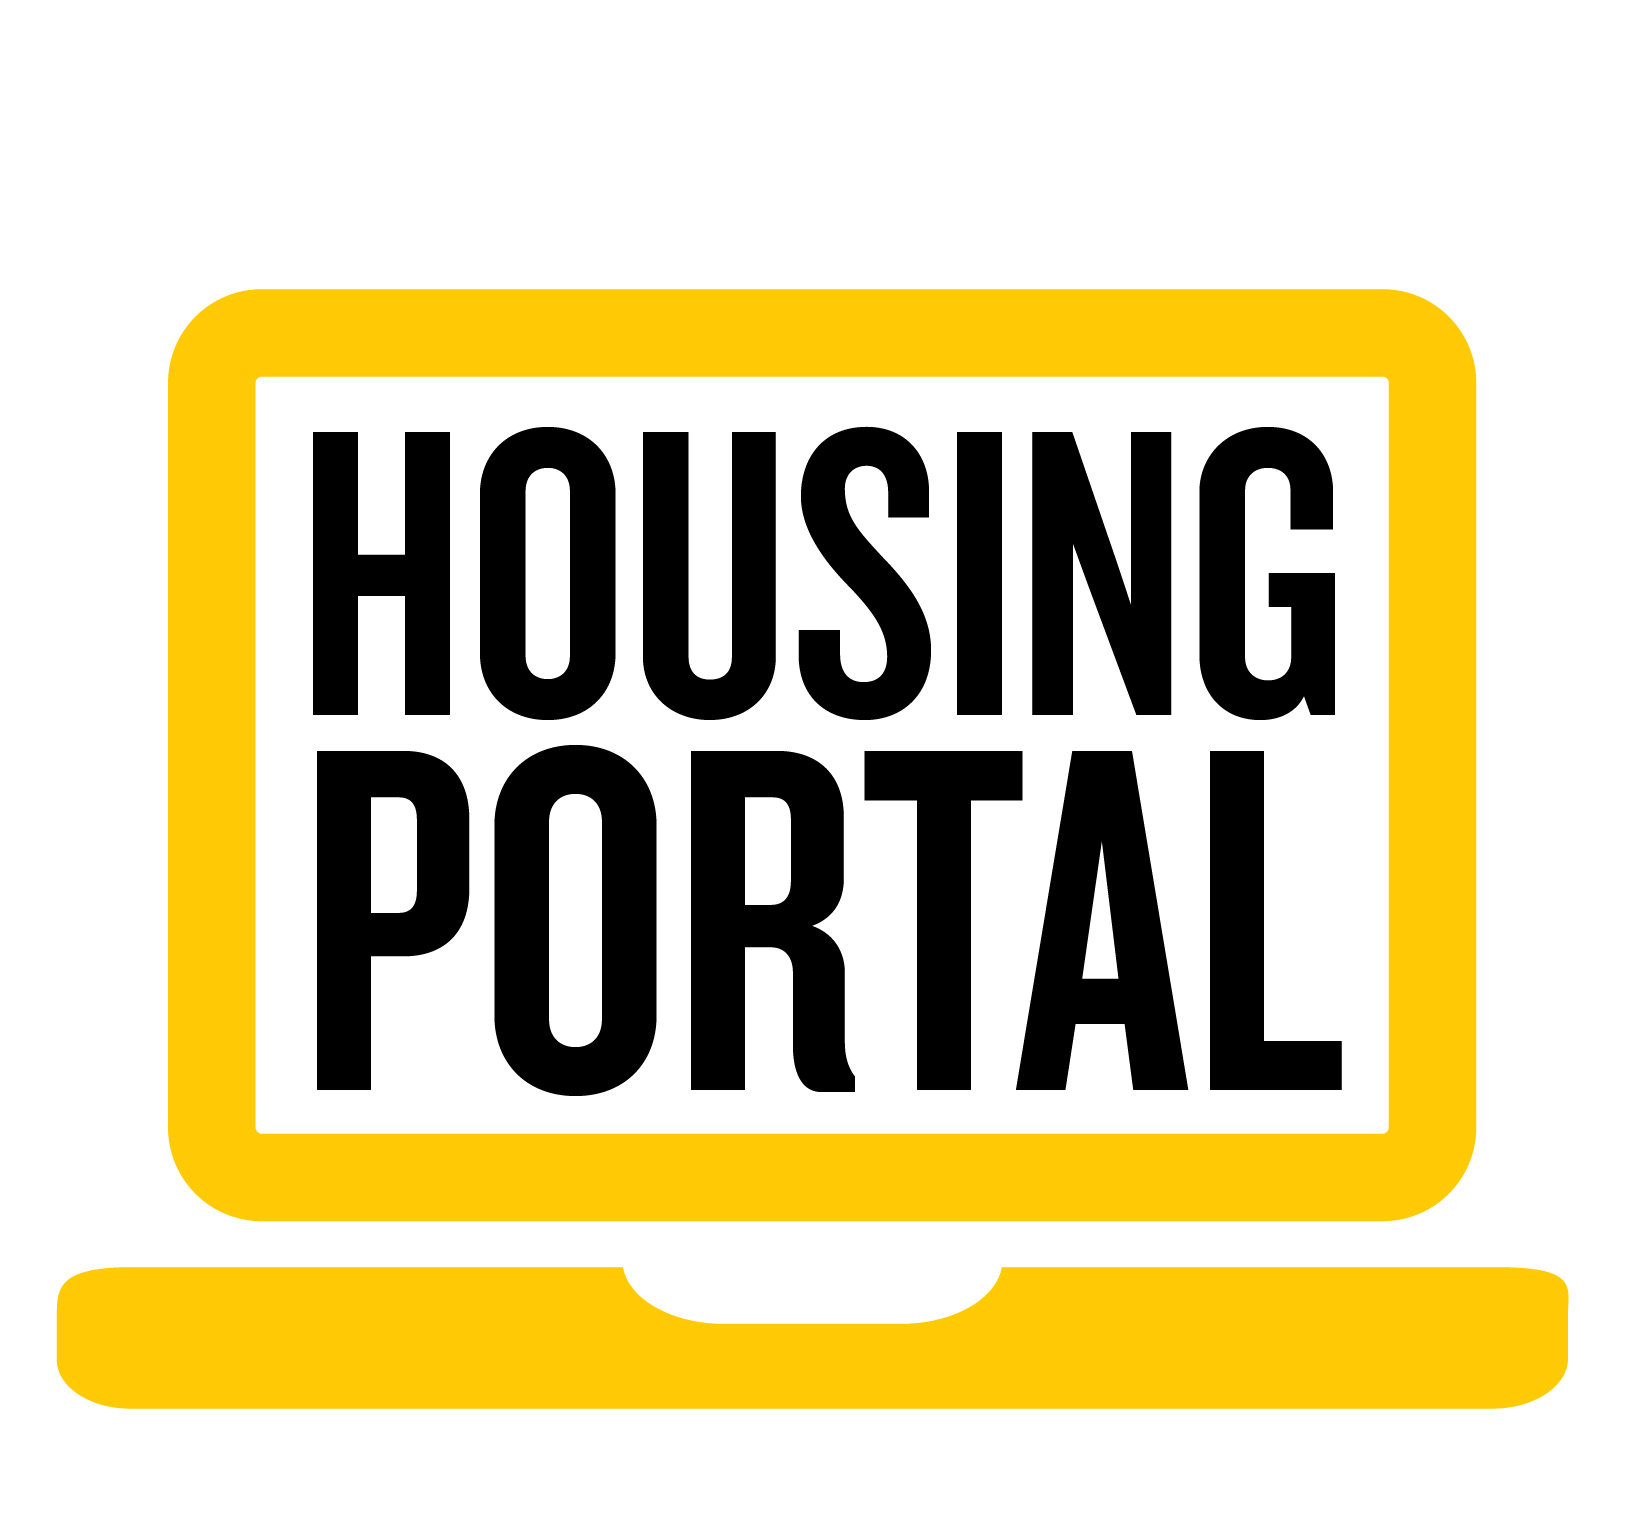 Housing Portal